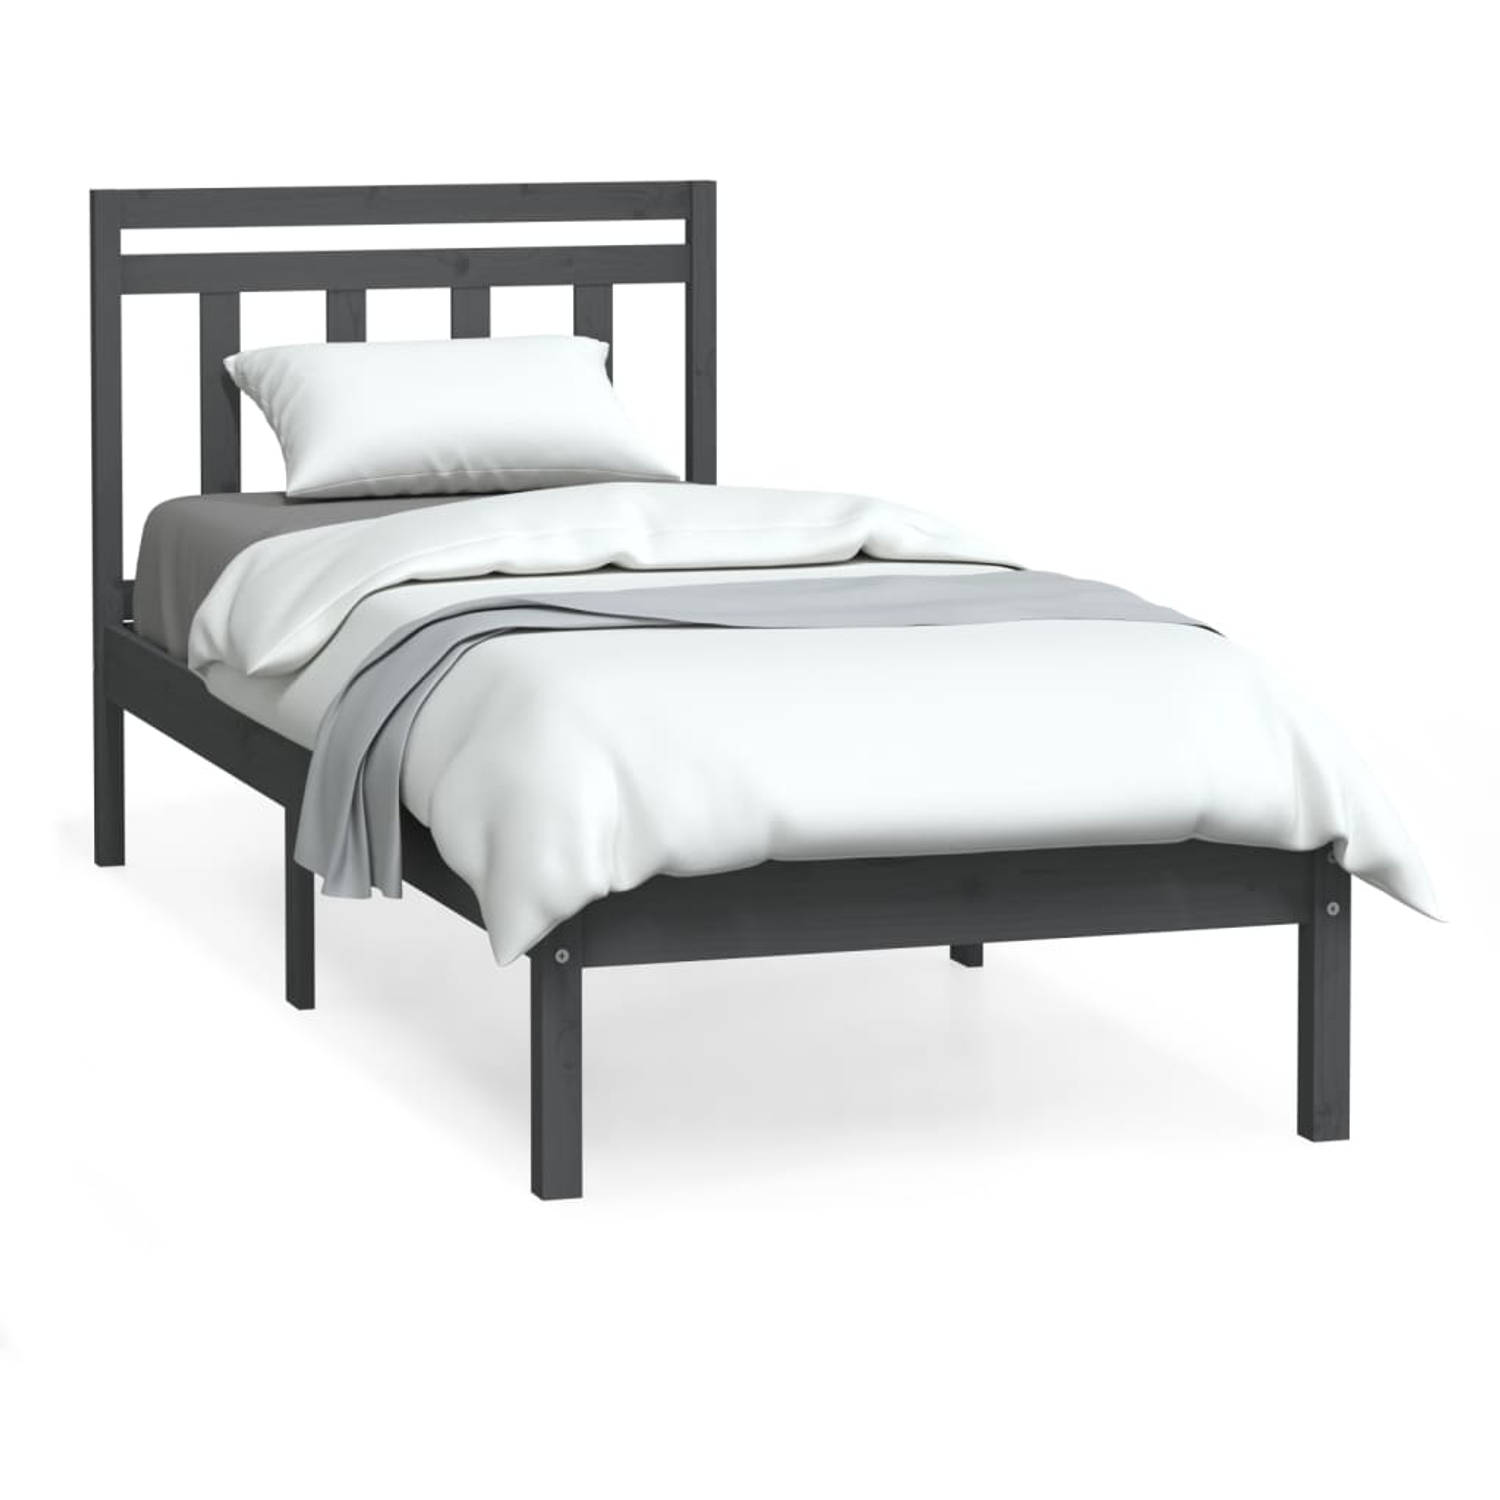 The Living Store Bedframe massief hout grijs 90x190 cm 3FT single - Bedframe - Bedframes - Eenpersoonsbed - Bed - Bedombouw - Frame - Bed Frame - Ledikant - Bedframe Met Hoofdeinde